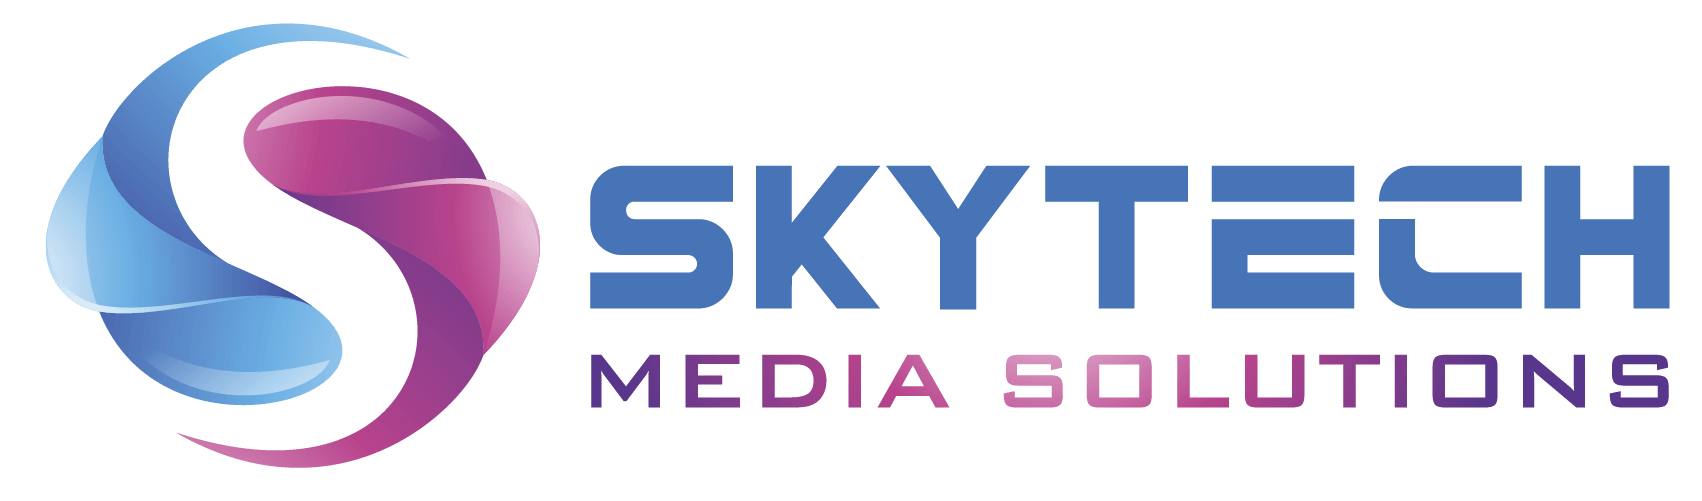 Skytech Media Solutions